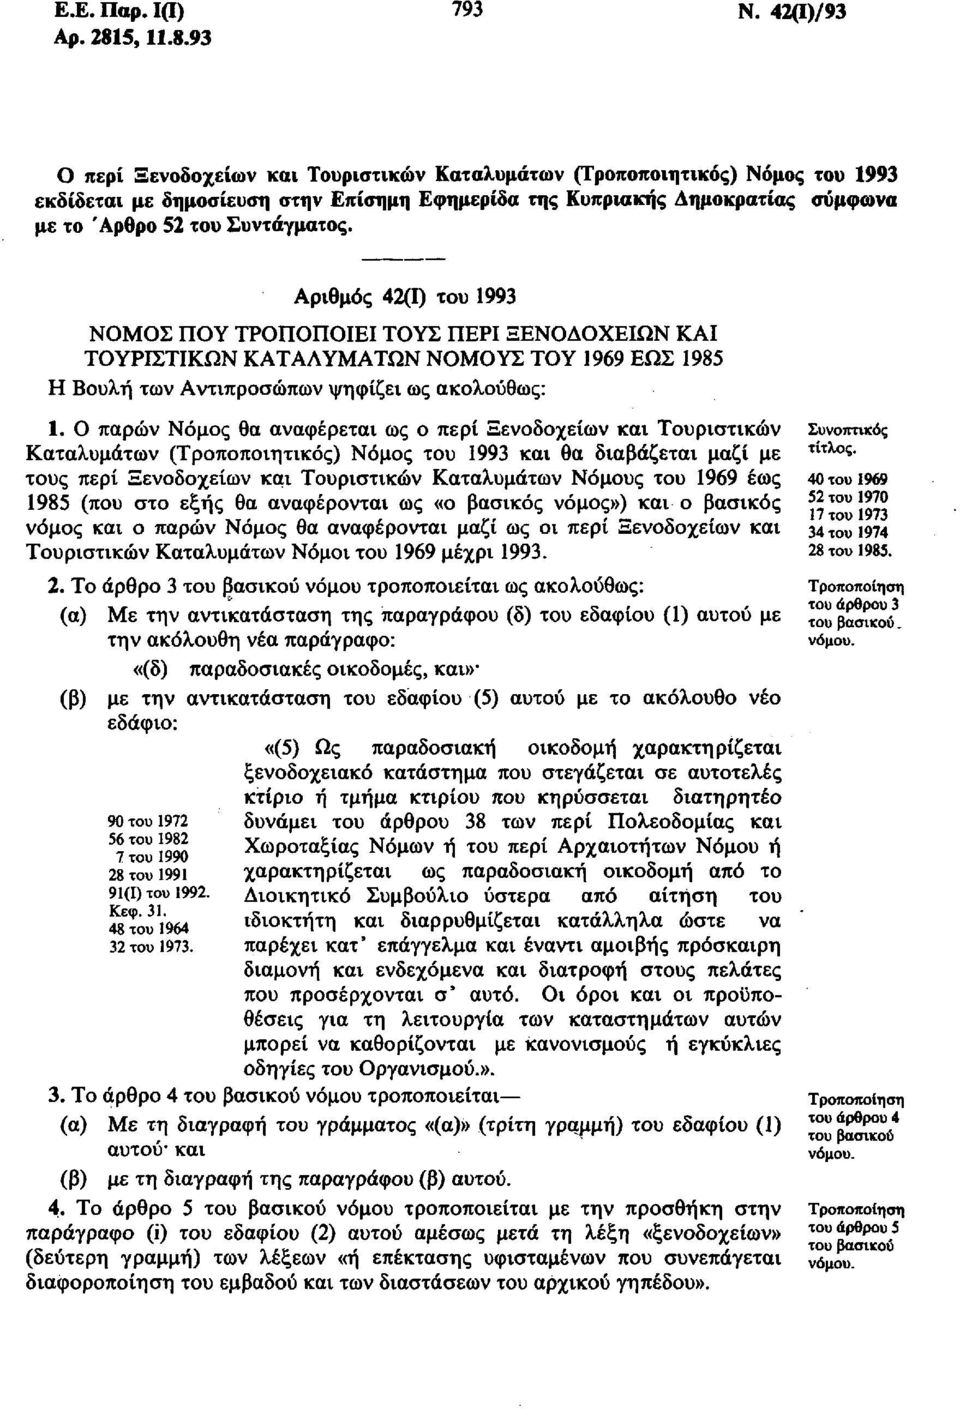 93 Ο περί Ξενοδοχείων και Τουριστικών Καταλυμάτων (Τροποποιητικός) Νόμος του 1993 εκδίδεται με δημοσίευση στην Επίσημη Εφημερίδα της Κυπριακής Δημοκρατίας σύμφωνα με το Άρθρο 52 του Συντάγματος.